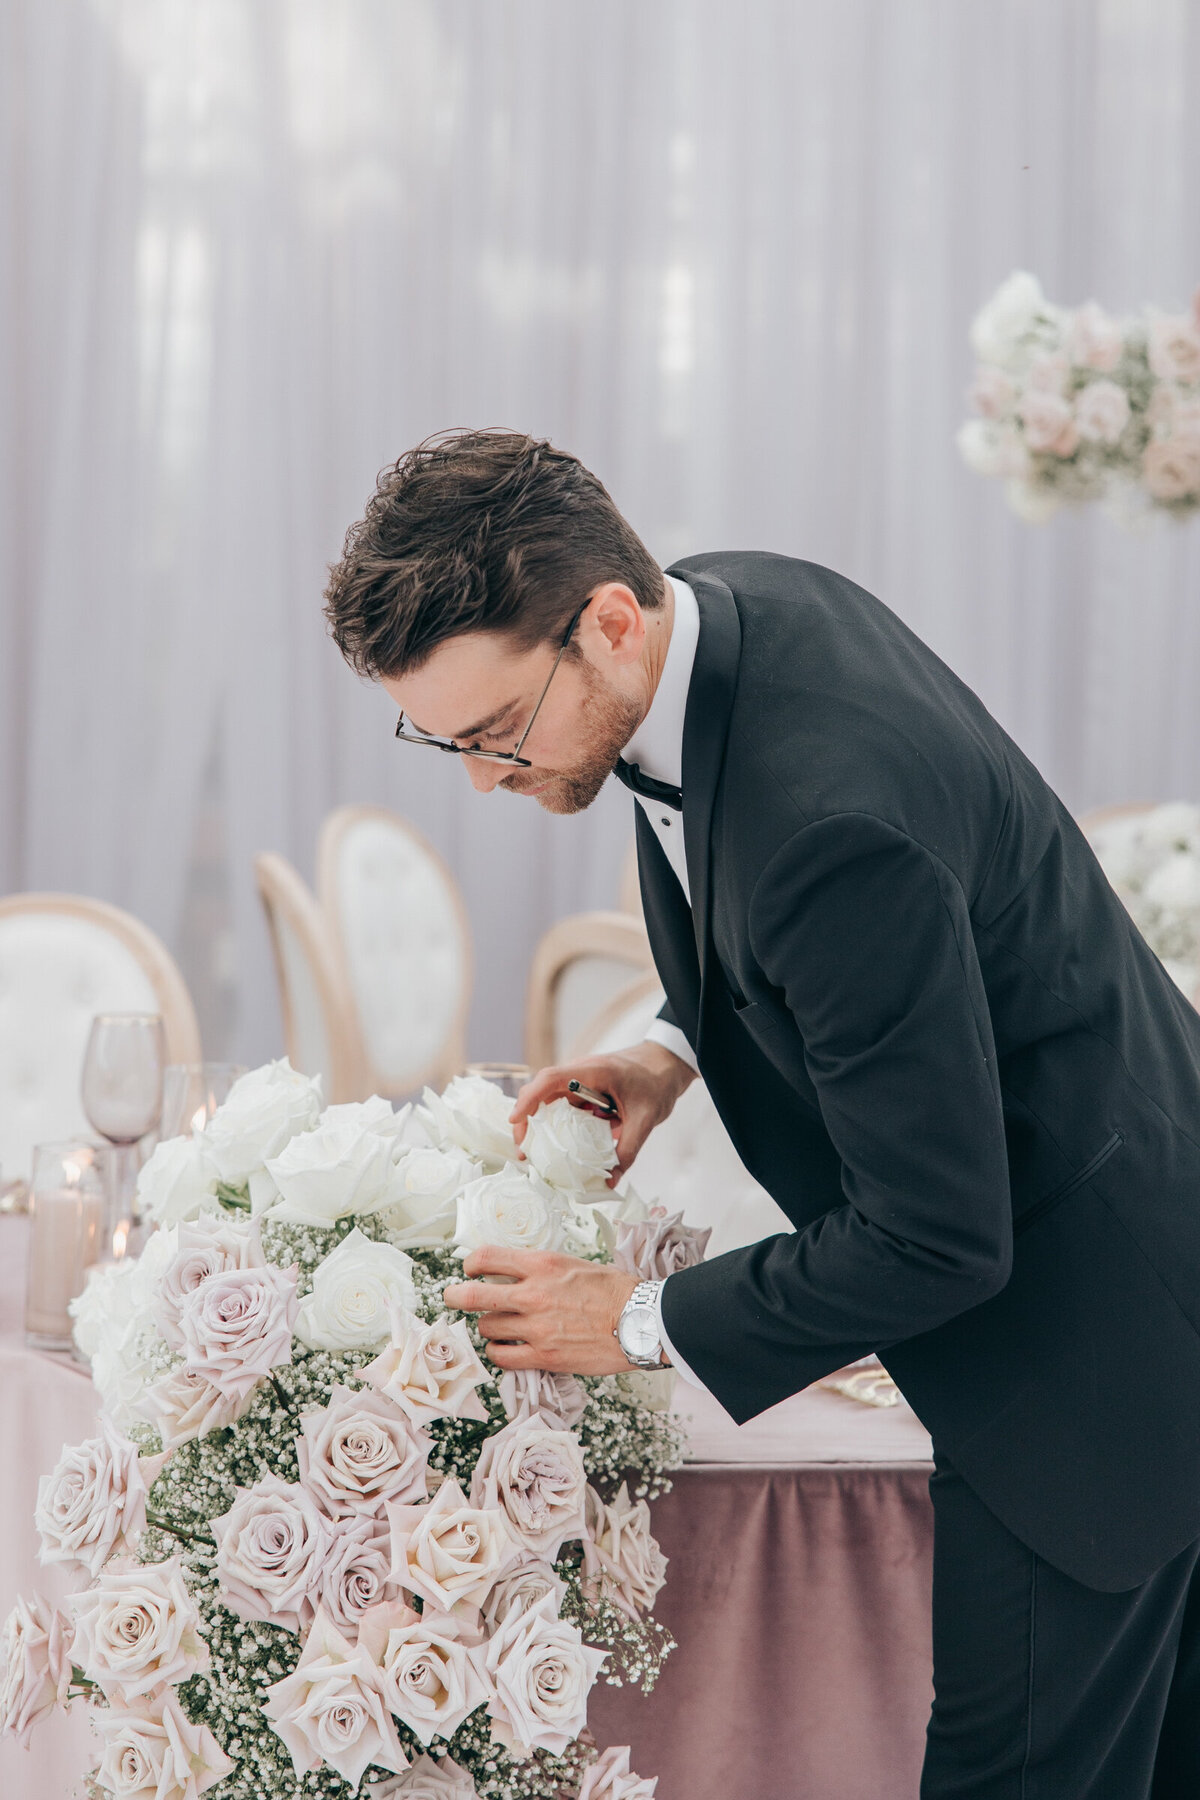 Wedding florist arranging white roses for glamorous wedding dinner